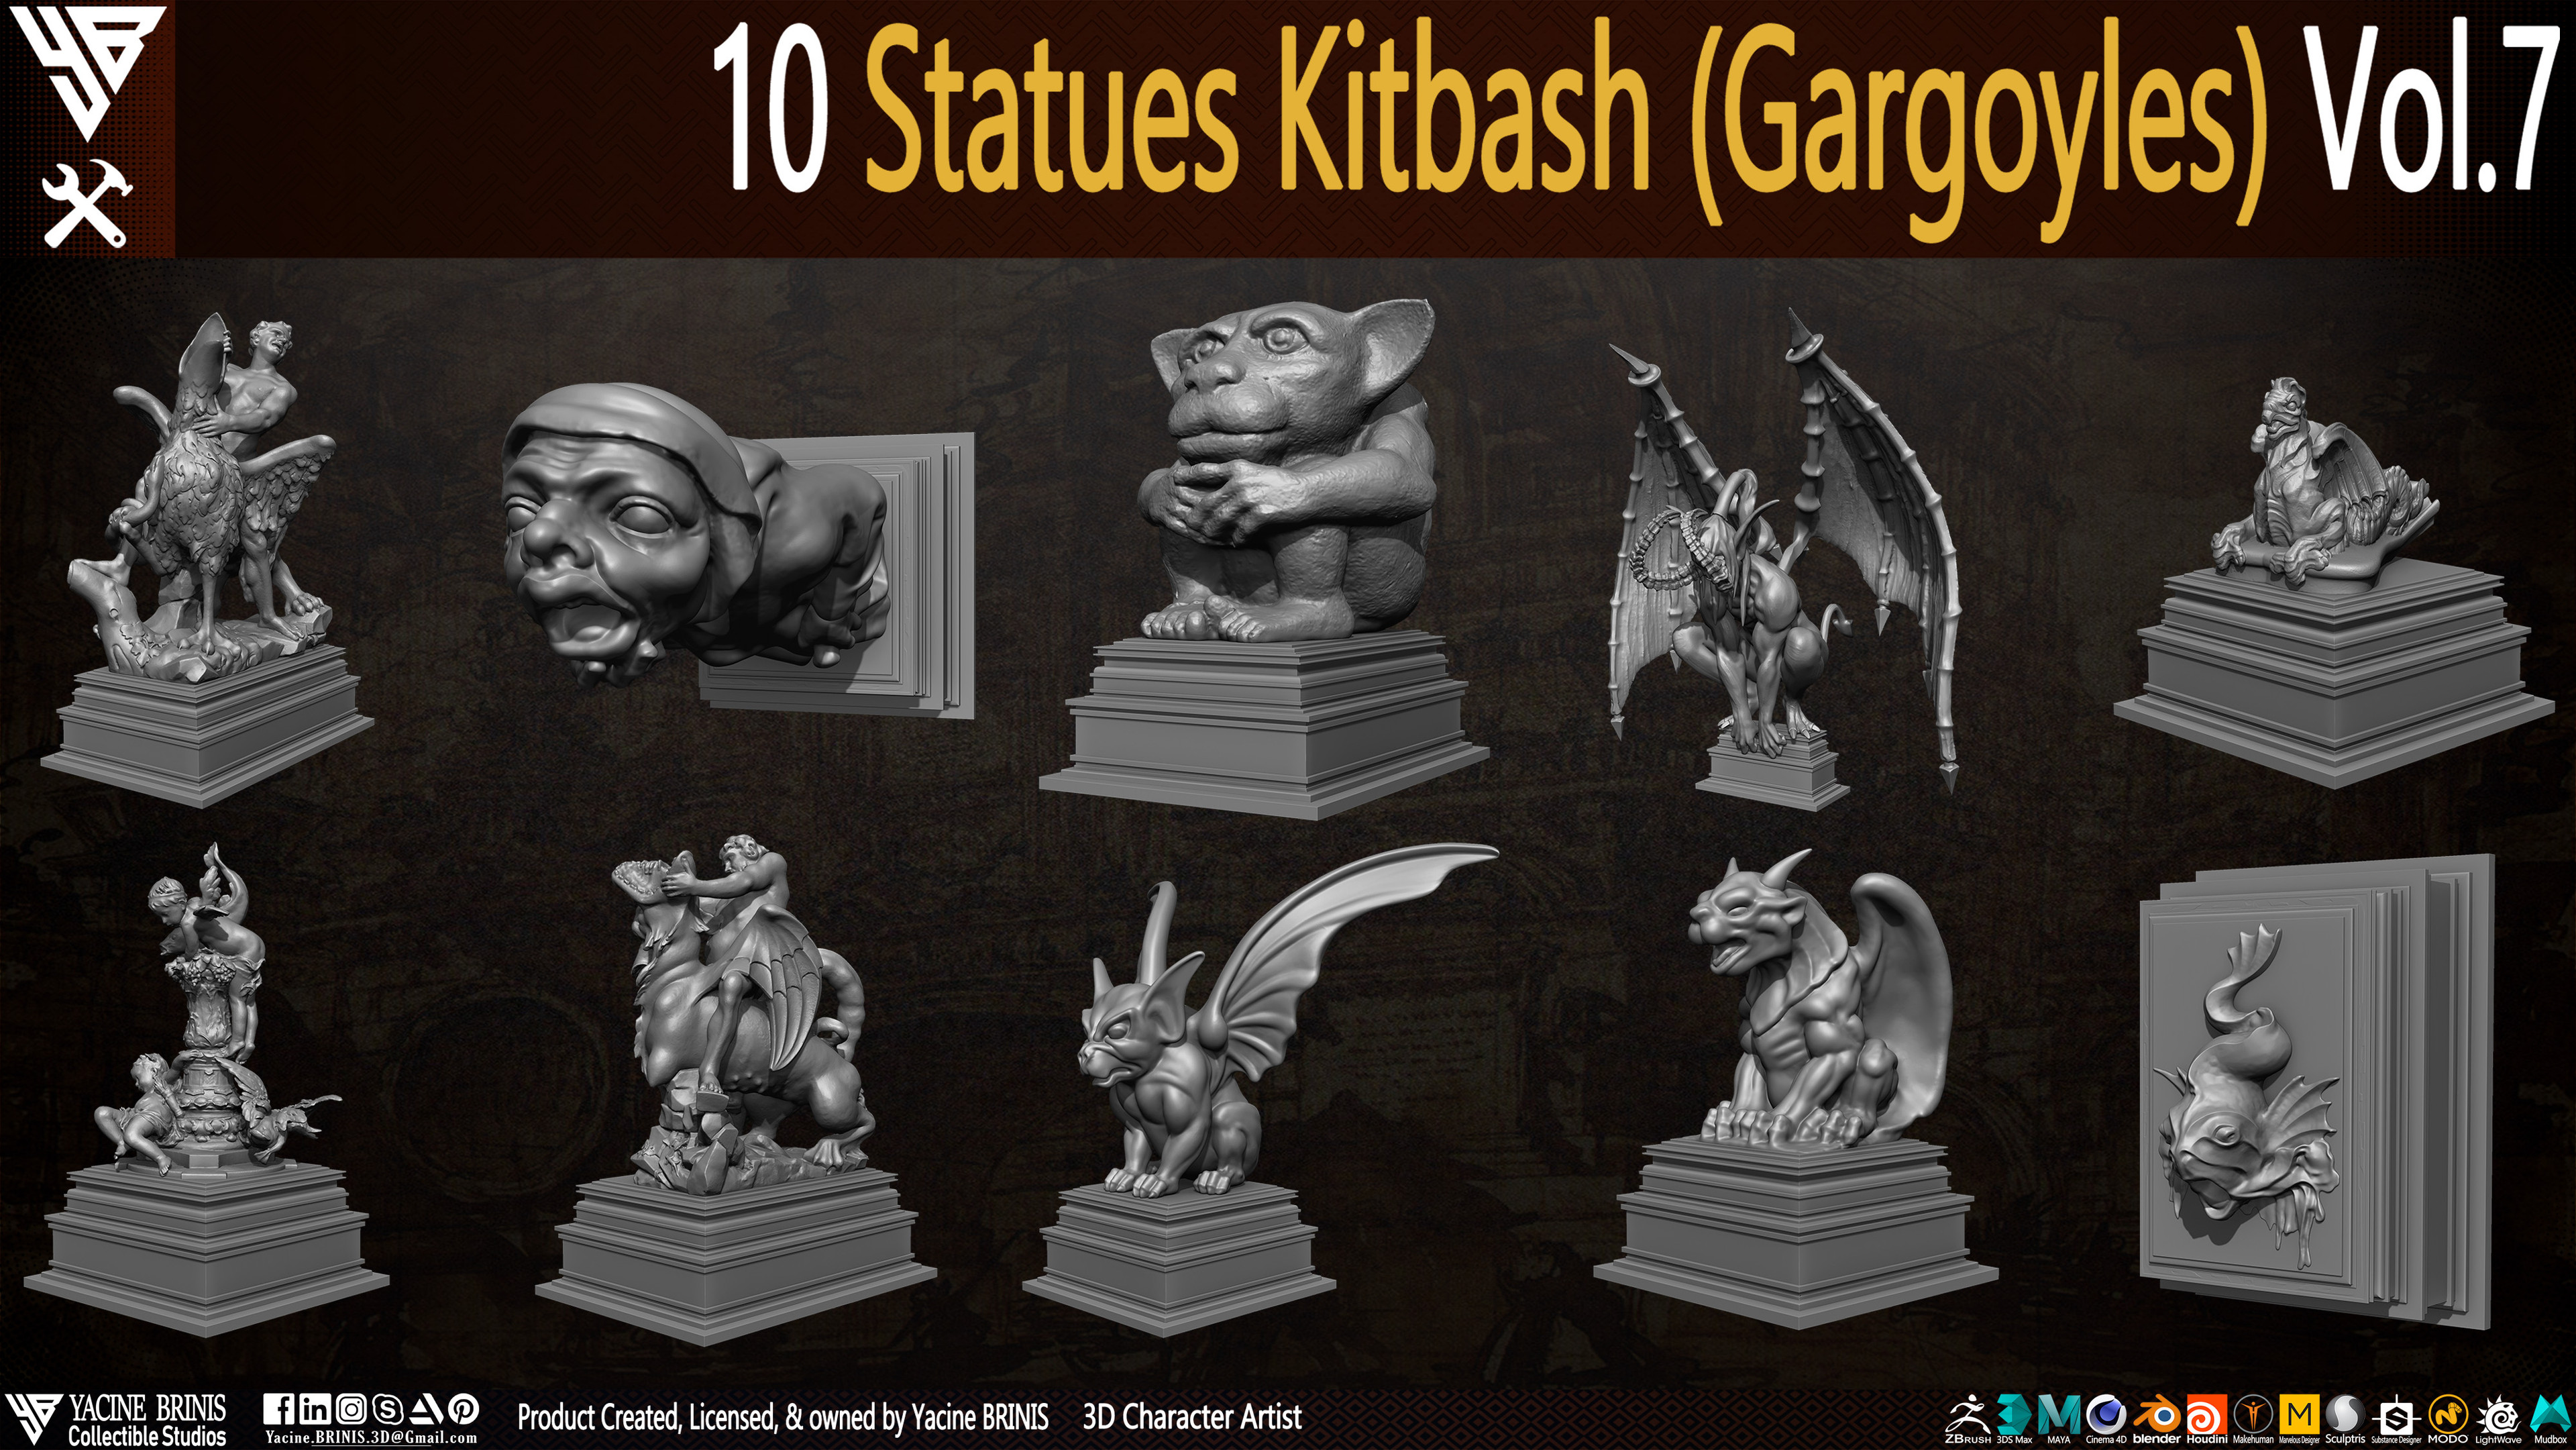 Statues Kitbash by yacine brinis Set 51